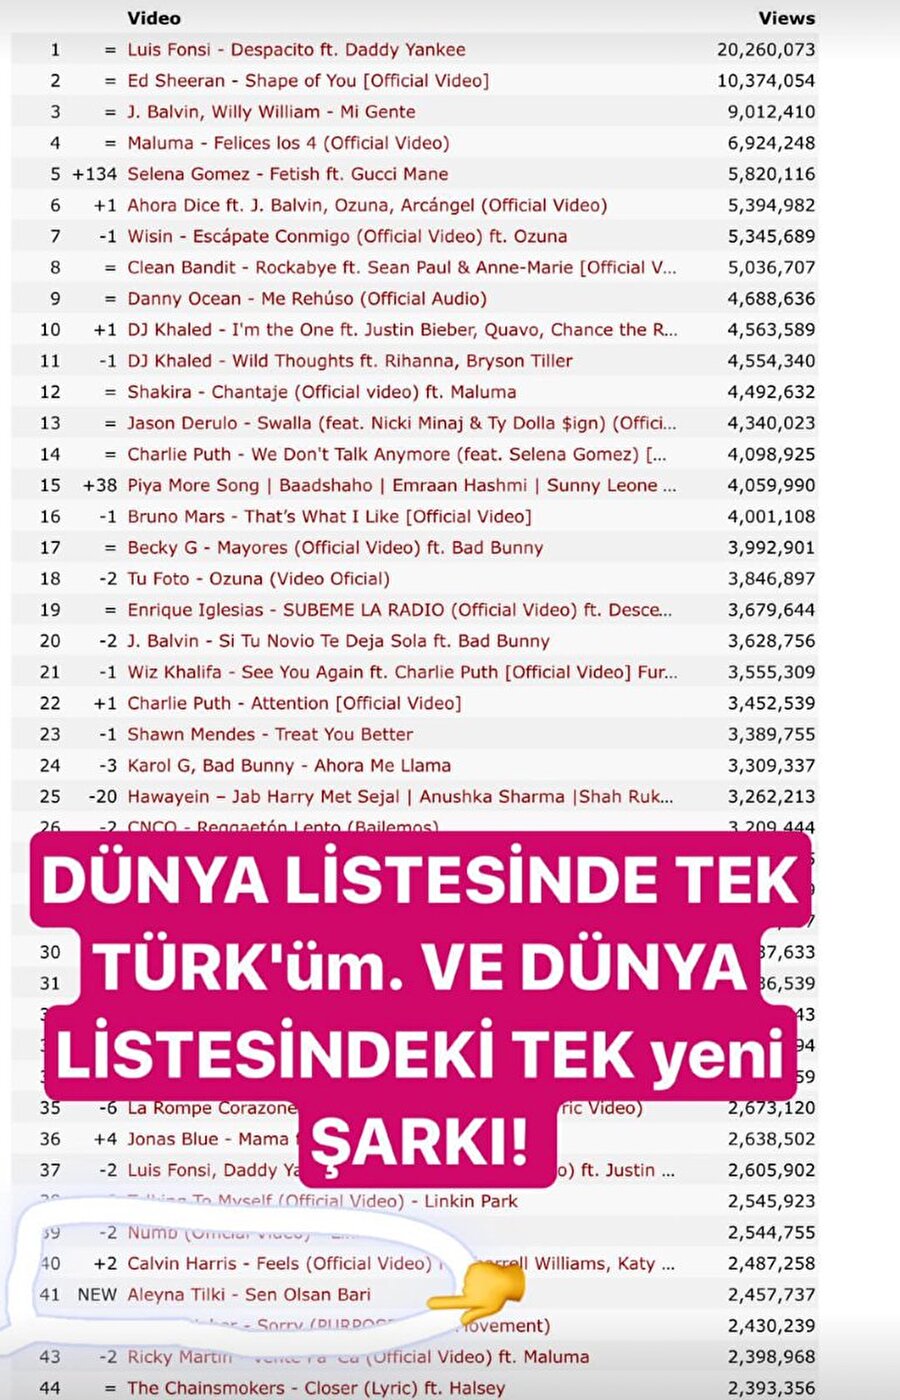 "Bu gurur hepimizin"

                                    
                                    Aleyna Tilki, "Bugün dünya listesine giren tek Türk olarak, 41 numaradan giriş yaptım. Ve bu listedeki tek yeni şarkı benim şarkım. Bu gurur hepimizin.." notuyla paylaşımda bulundu. 
                                
                                